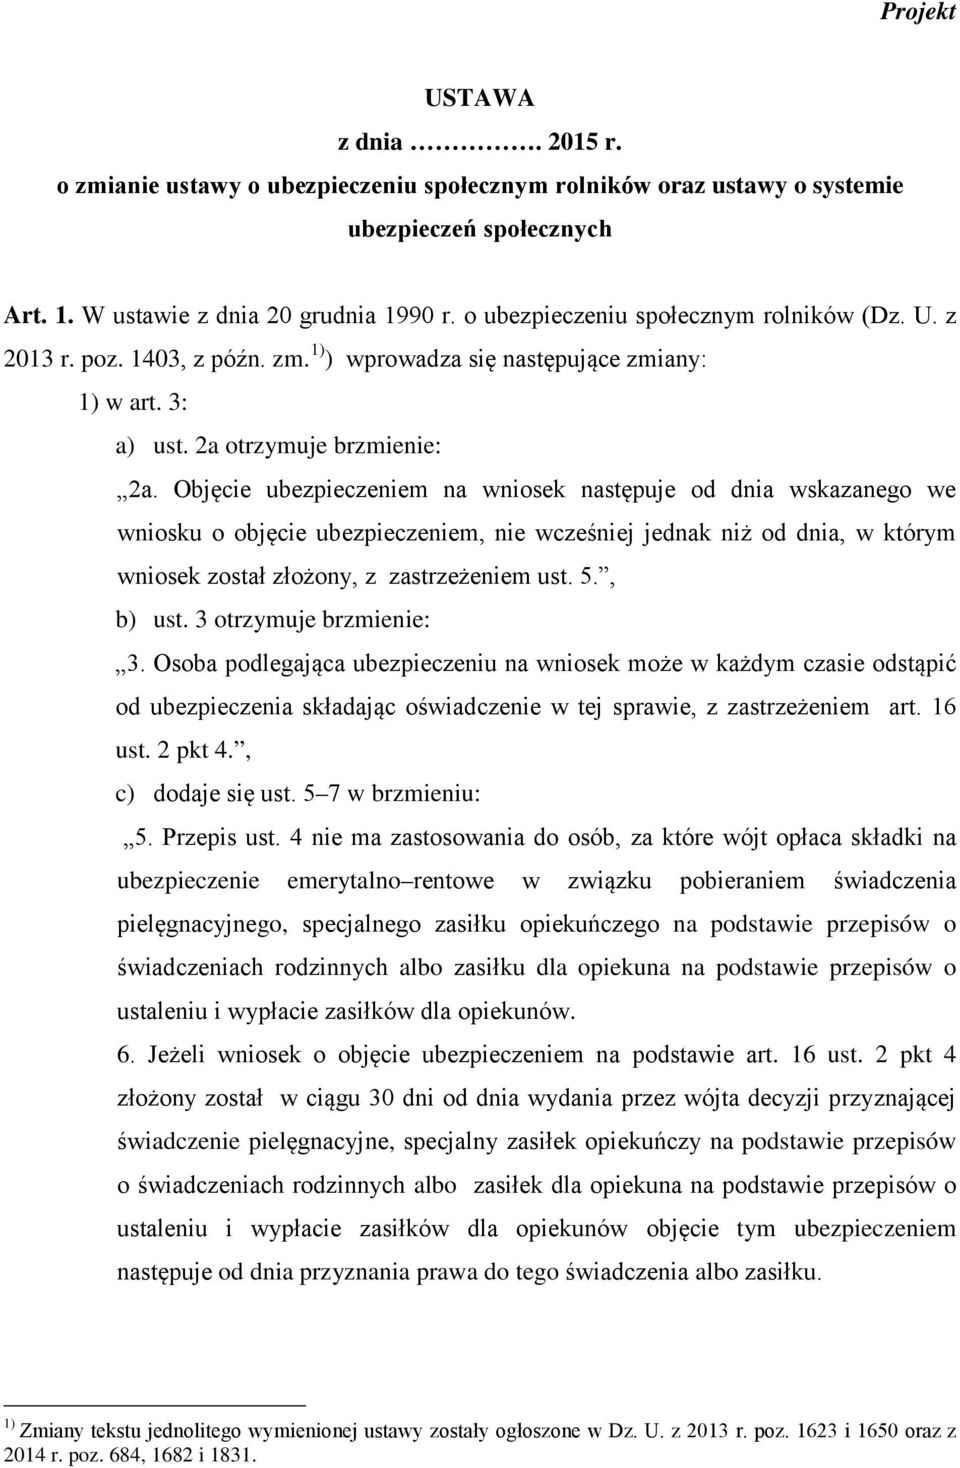 Objęcie ubezpieczeniem na wniosek następuje od dnia wskazanego we wniosku o objęcie ubezpieczeniem, nie wcześniej jednak niż od dnia, w którym wniosek został złożony, z zastrzeżeniem ust. 5., b) ust.